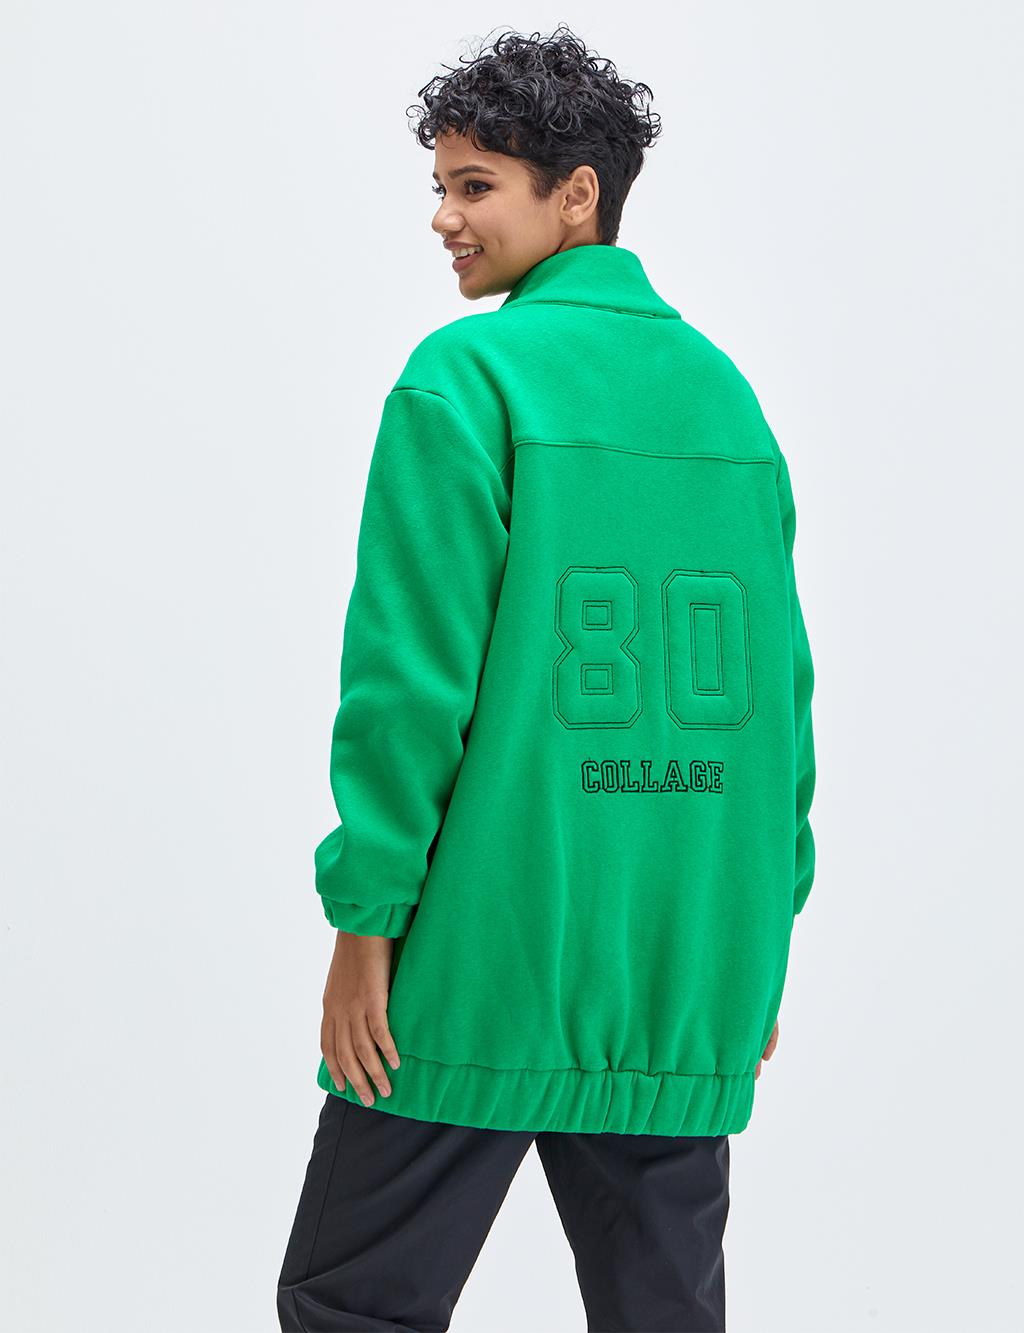 Fermuar Kapamalı Armalı Sweatshirt Yeşil